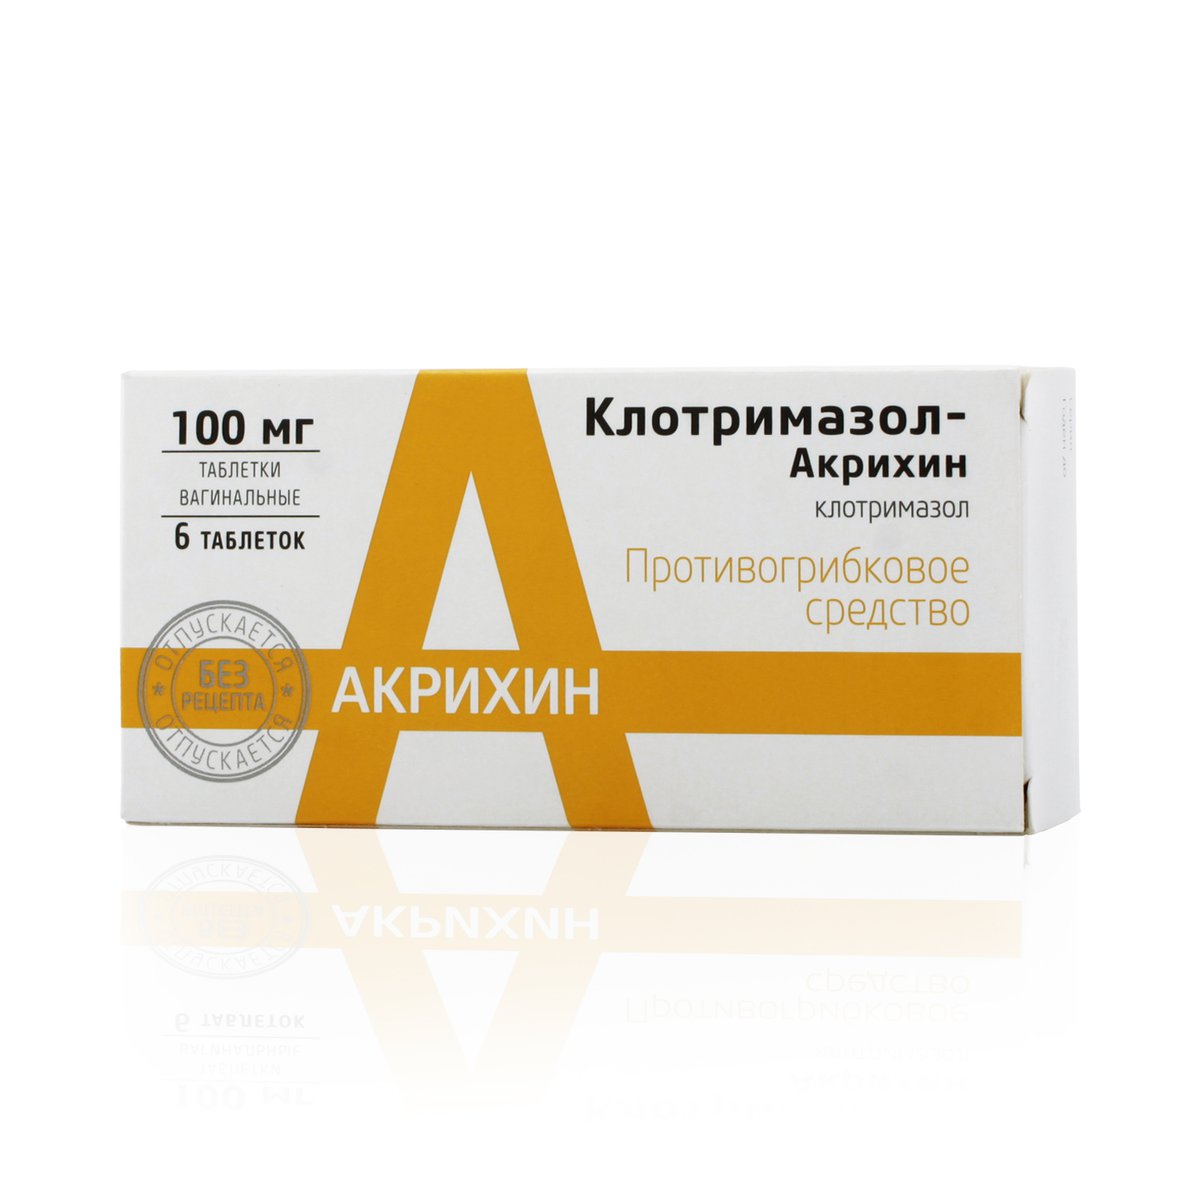 Клотримазол акрихин (таблетки, 6 шт, 100 мг) - цена,  онлайн в .